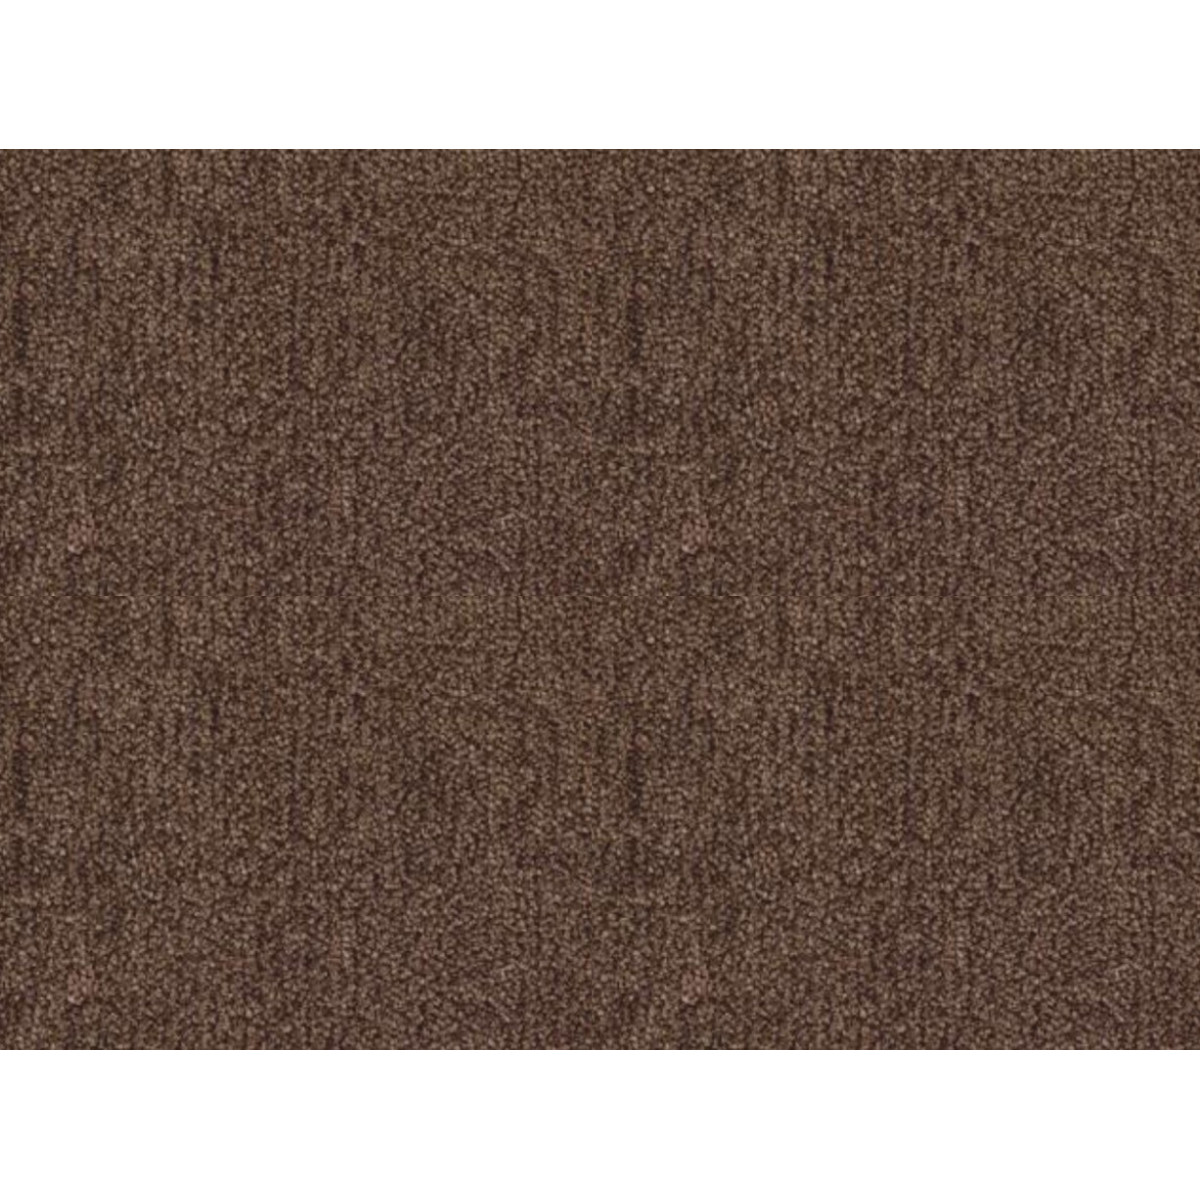 Metrážový koberec Tagil / 11431 hnědý